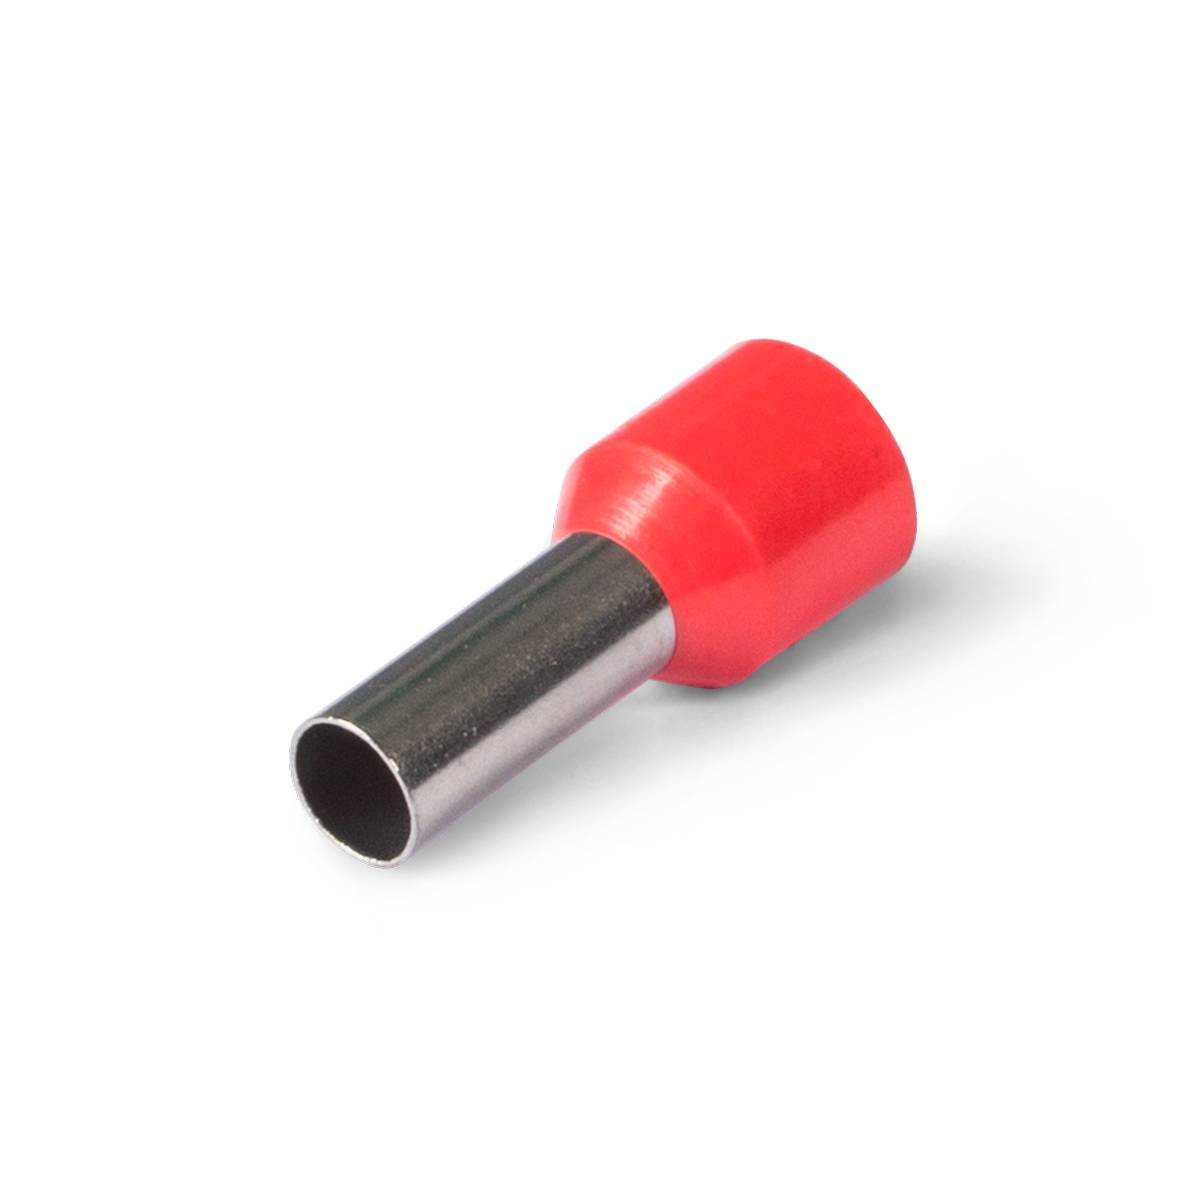 НШВИ 1.0–12 (КВТ 79439) наконечник штыревой втулочный изолированный красный (100 шт. п/э пакет zip-lock)